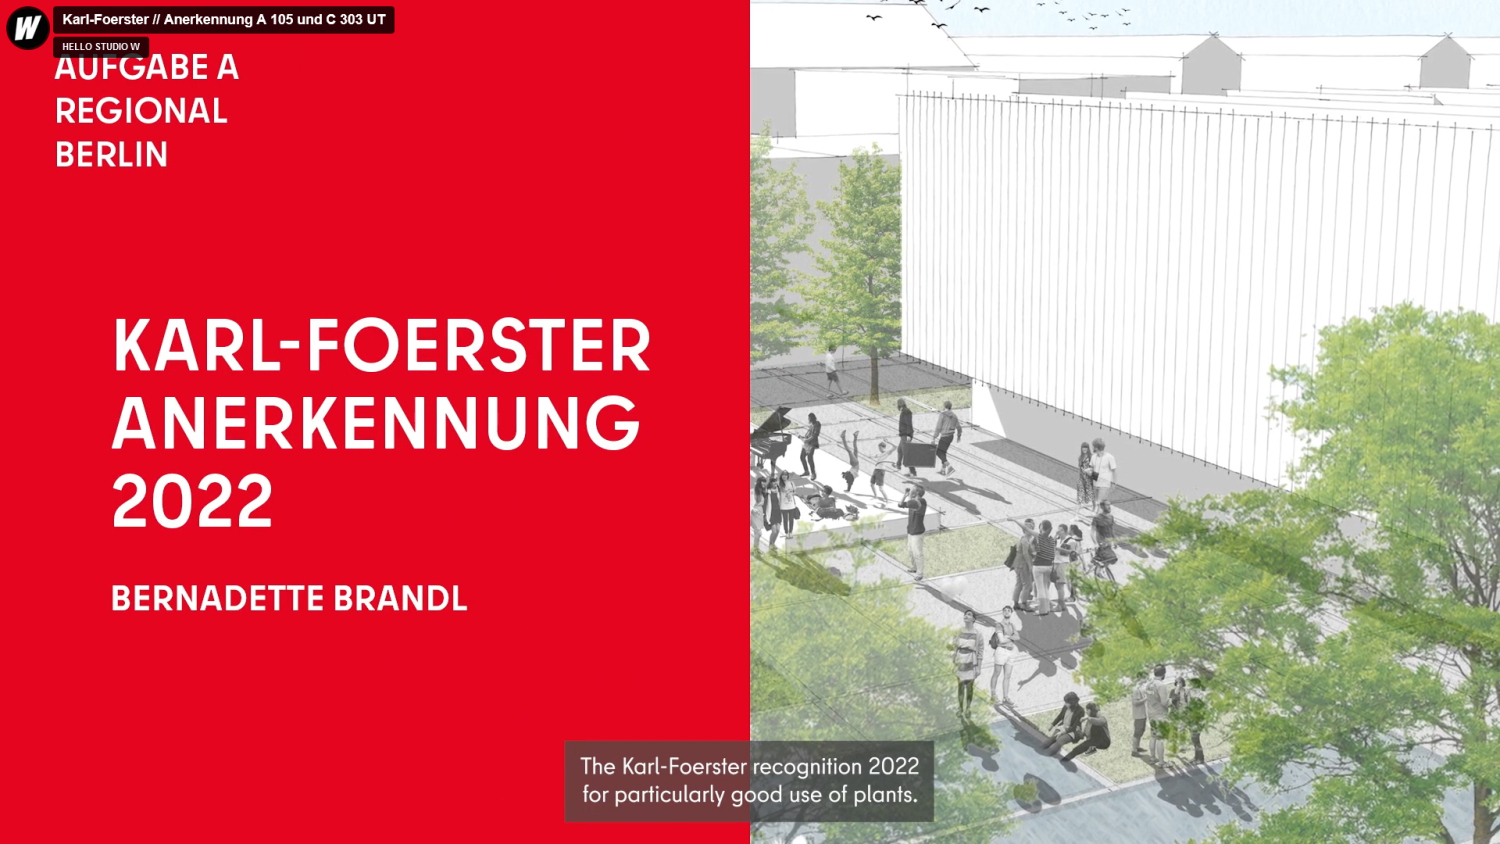 Karl Foerster - Anerkennung 2022